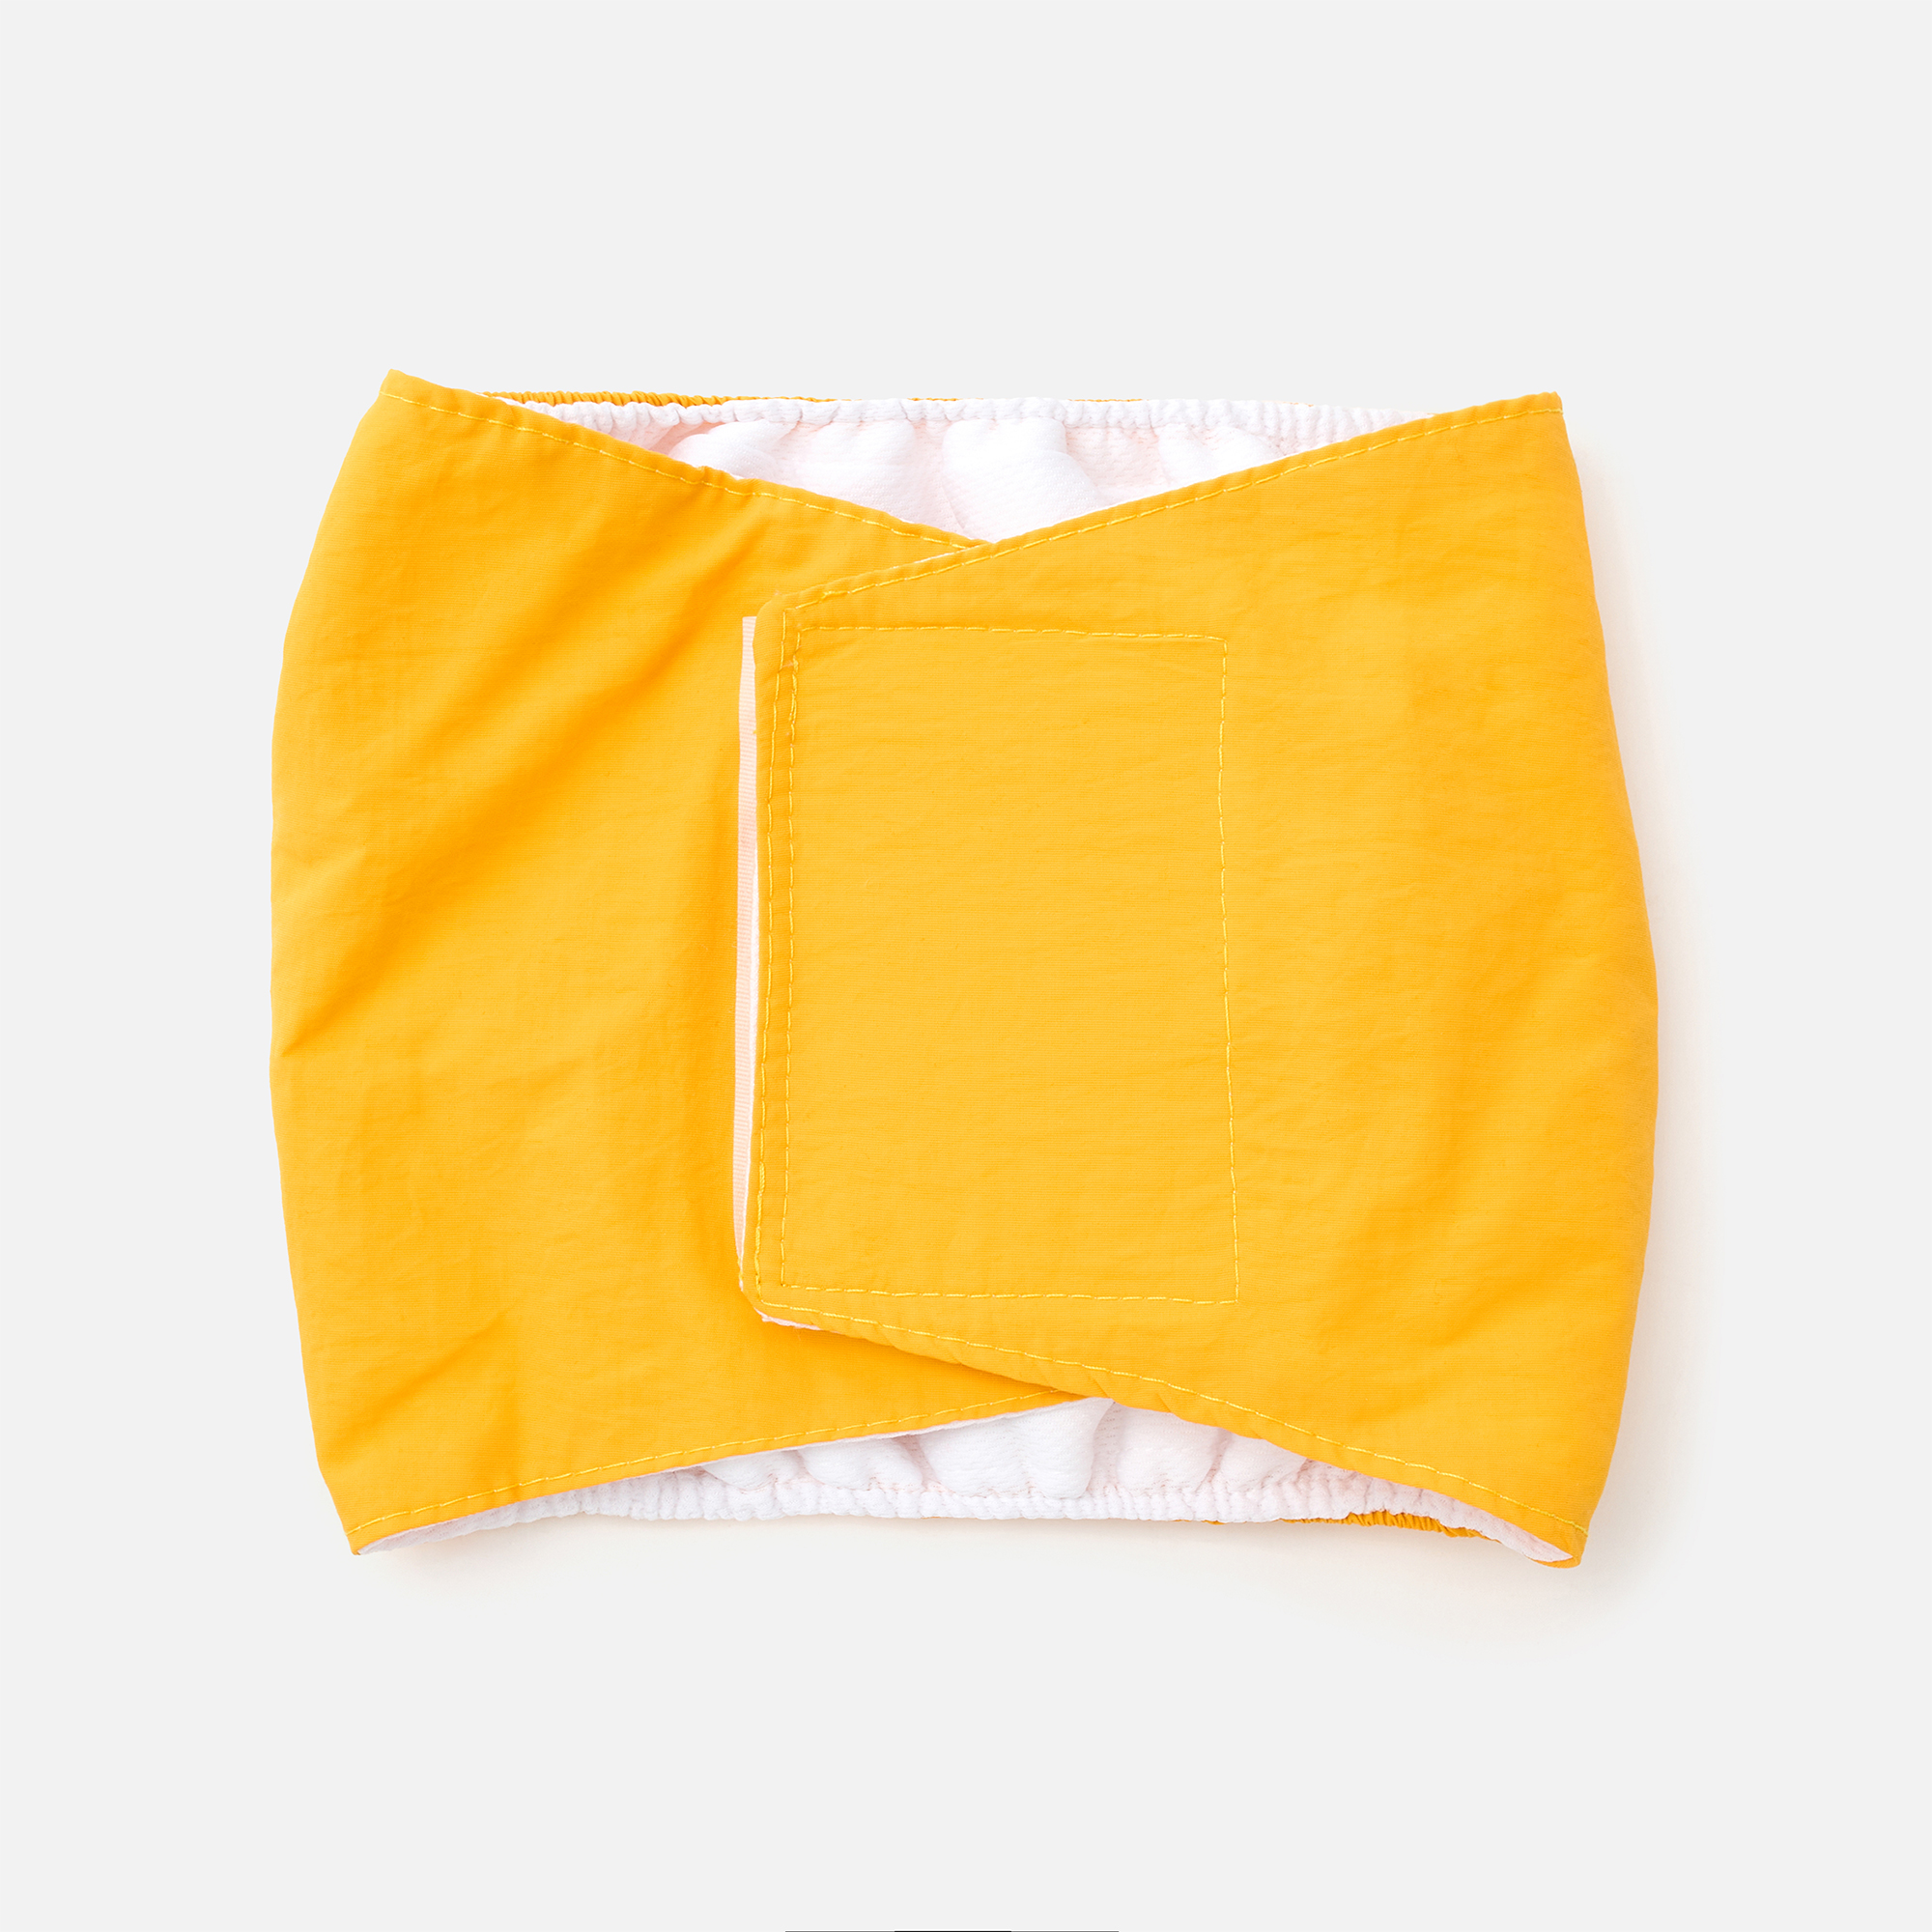 Послеоперационная повязка для собак Market Union, размер XL, жёлтая